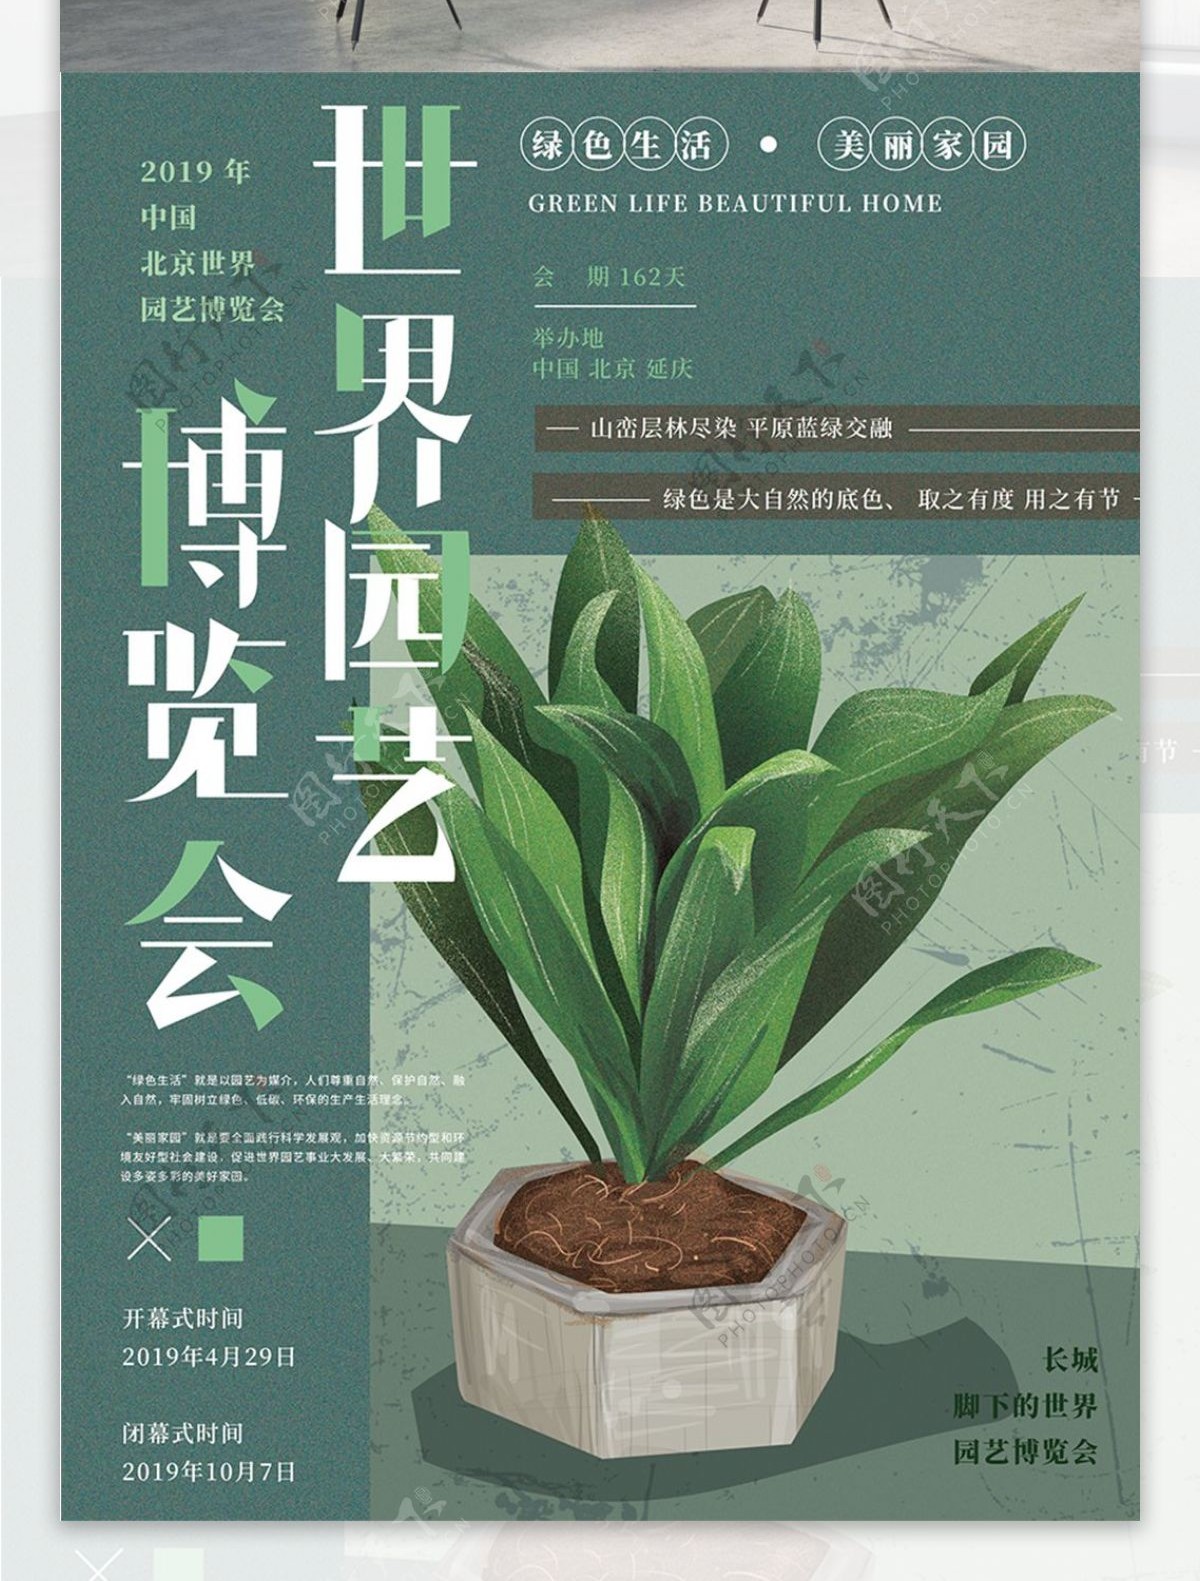 原创手绘北京世界园艺博览会海报